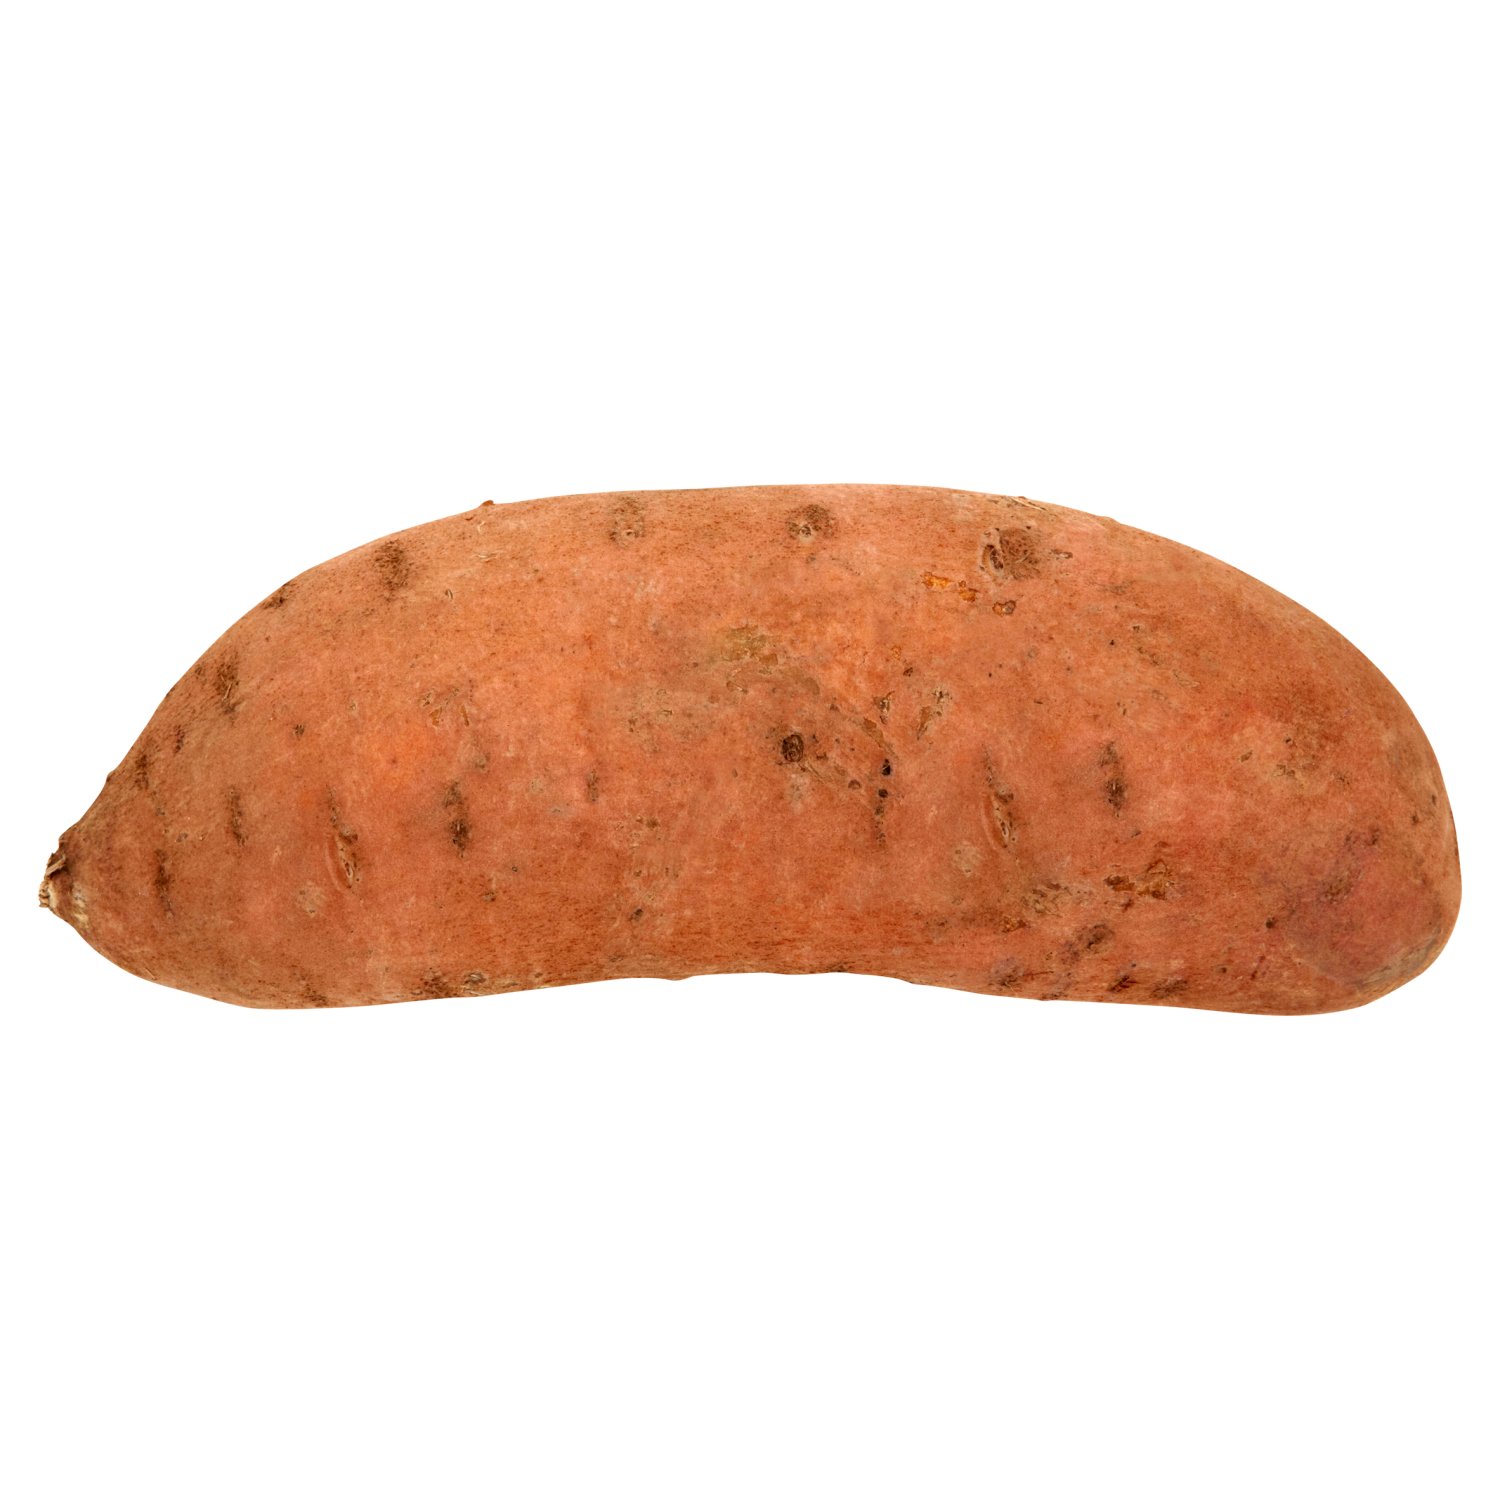 SuperValu Loose Sweet Potato (1 Piece)